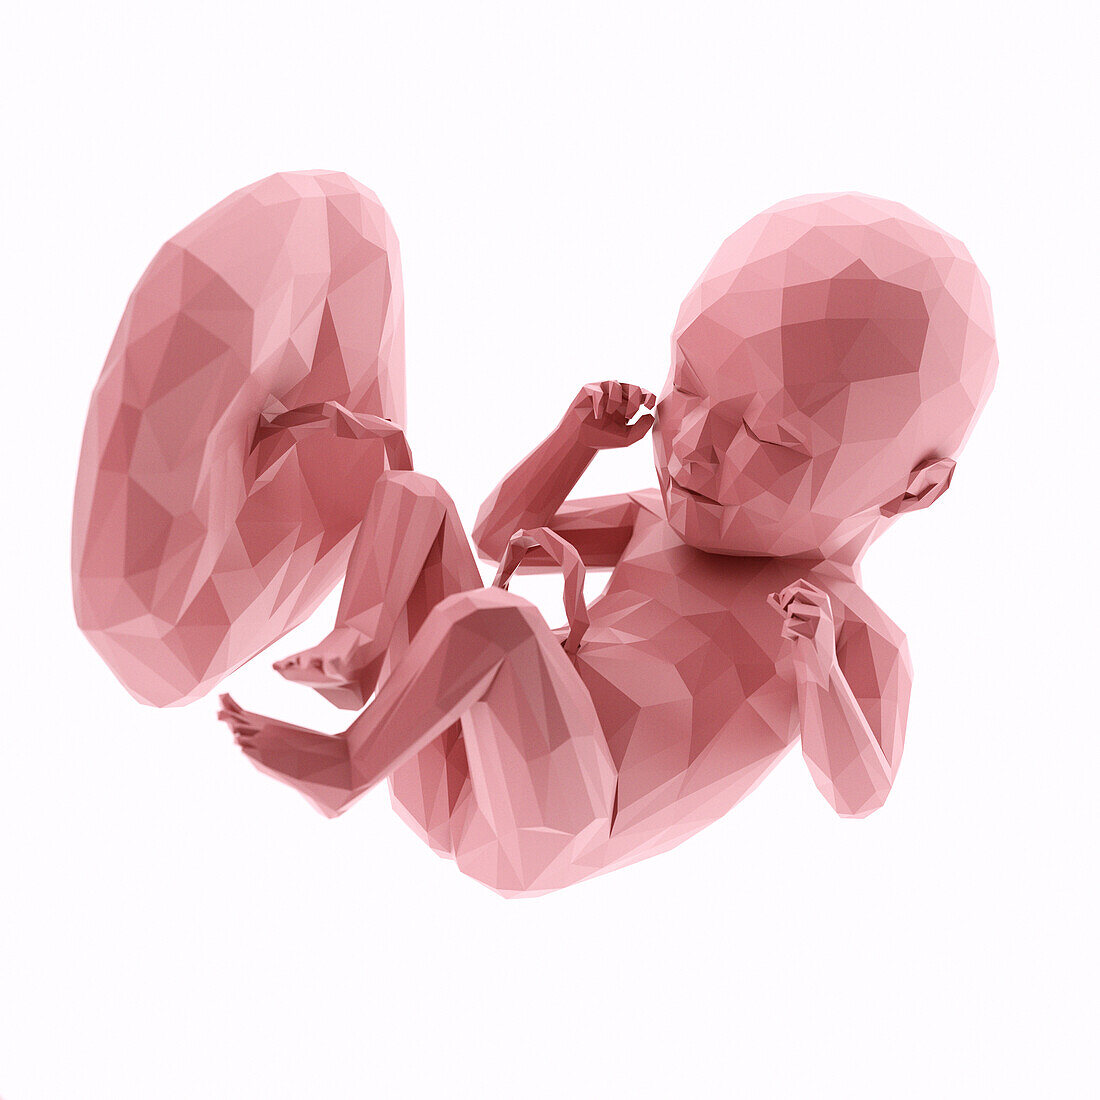 Human fetus at week 35, abstract illustration